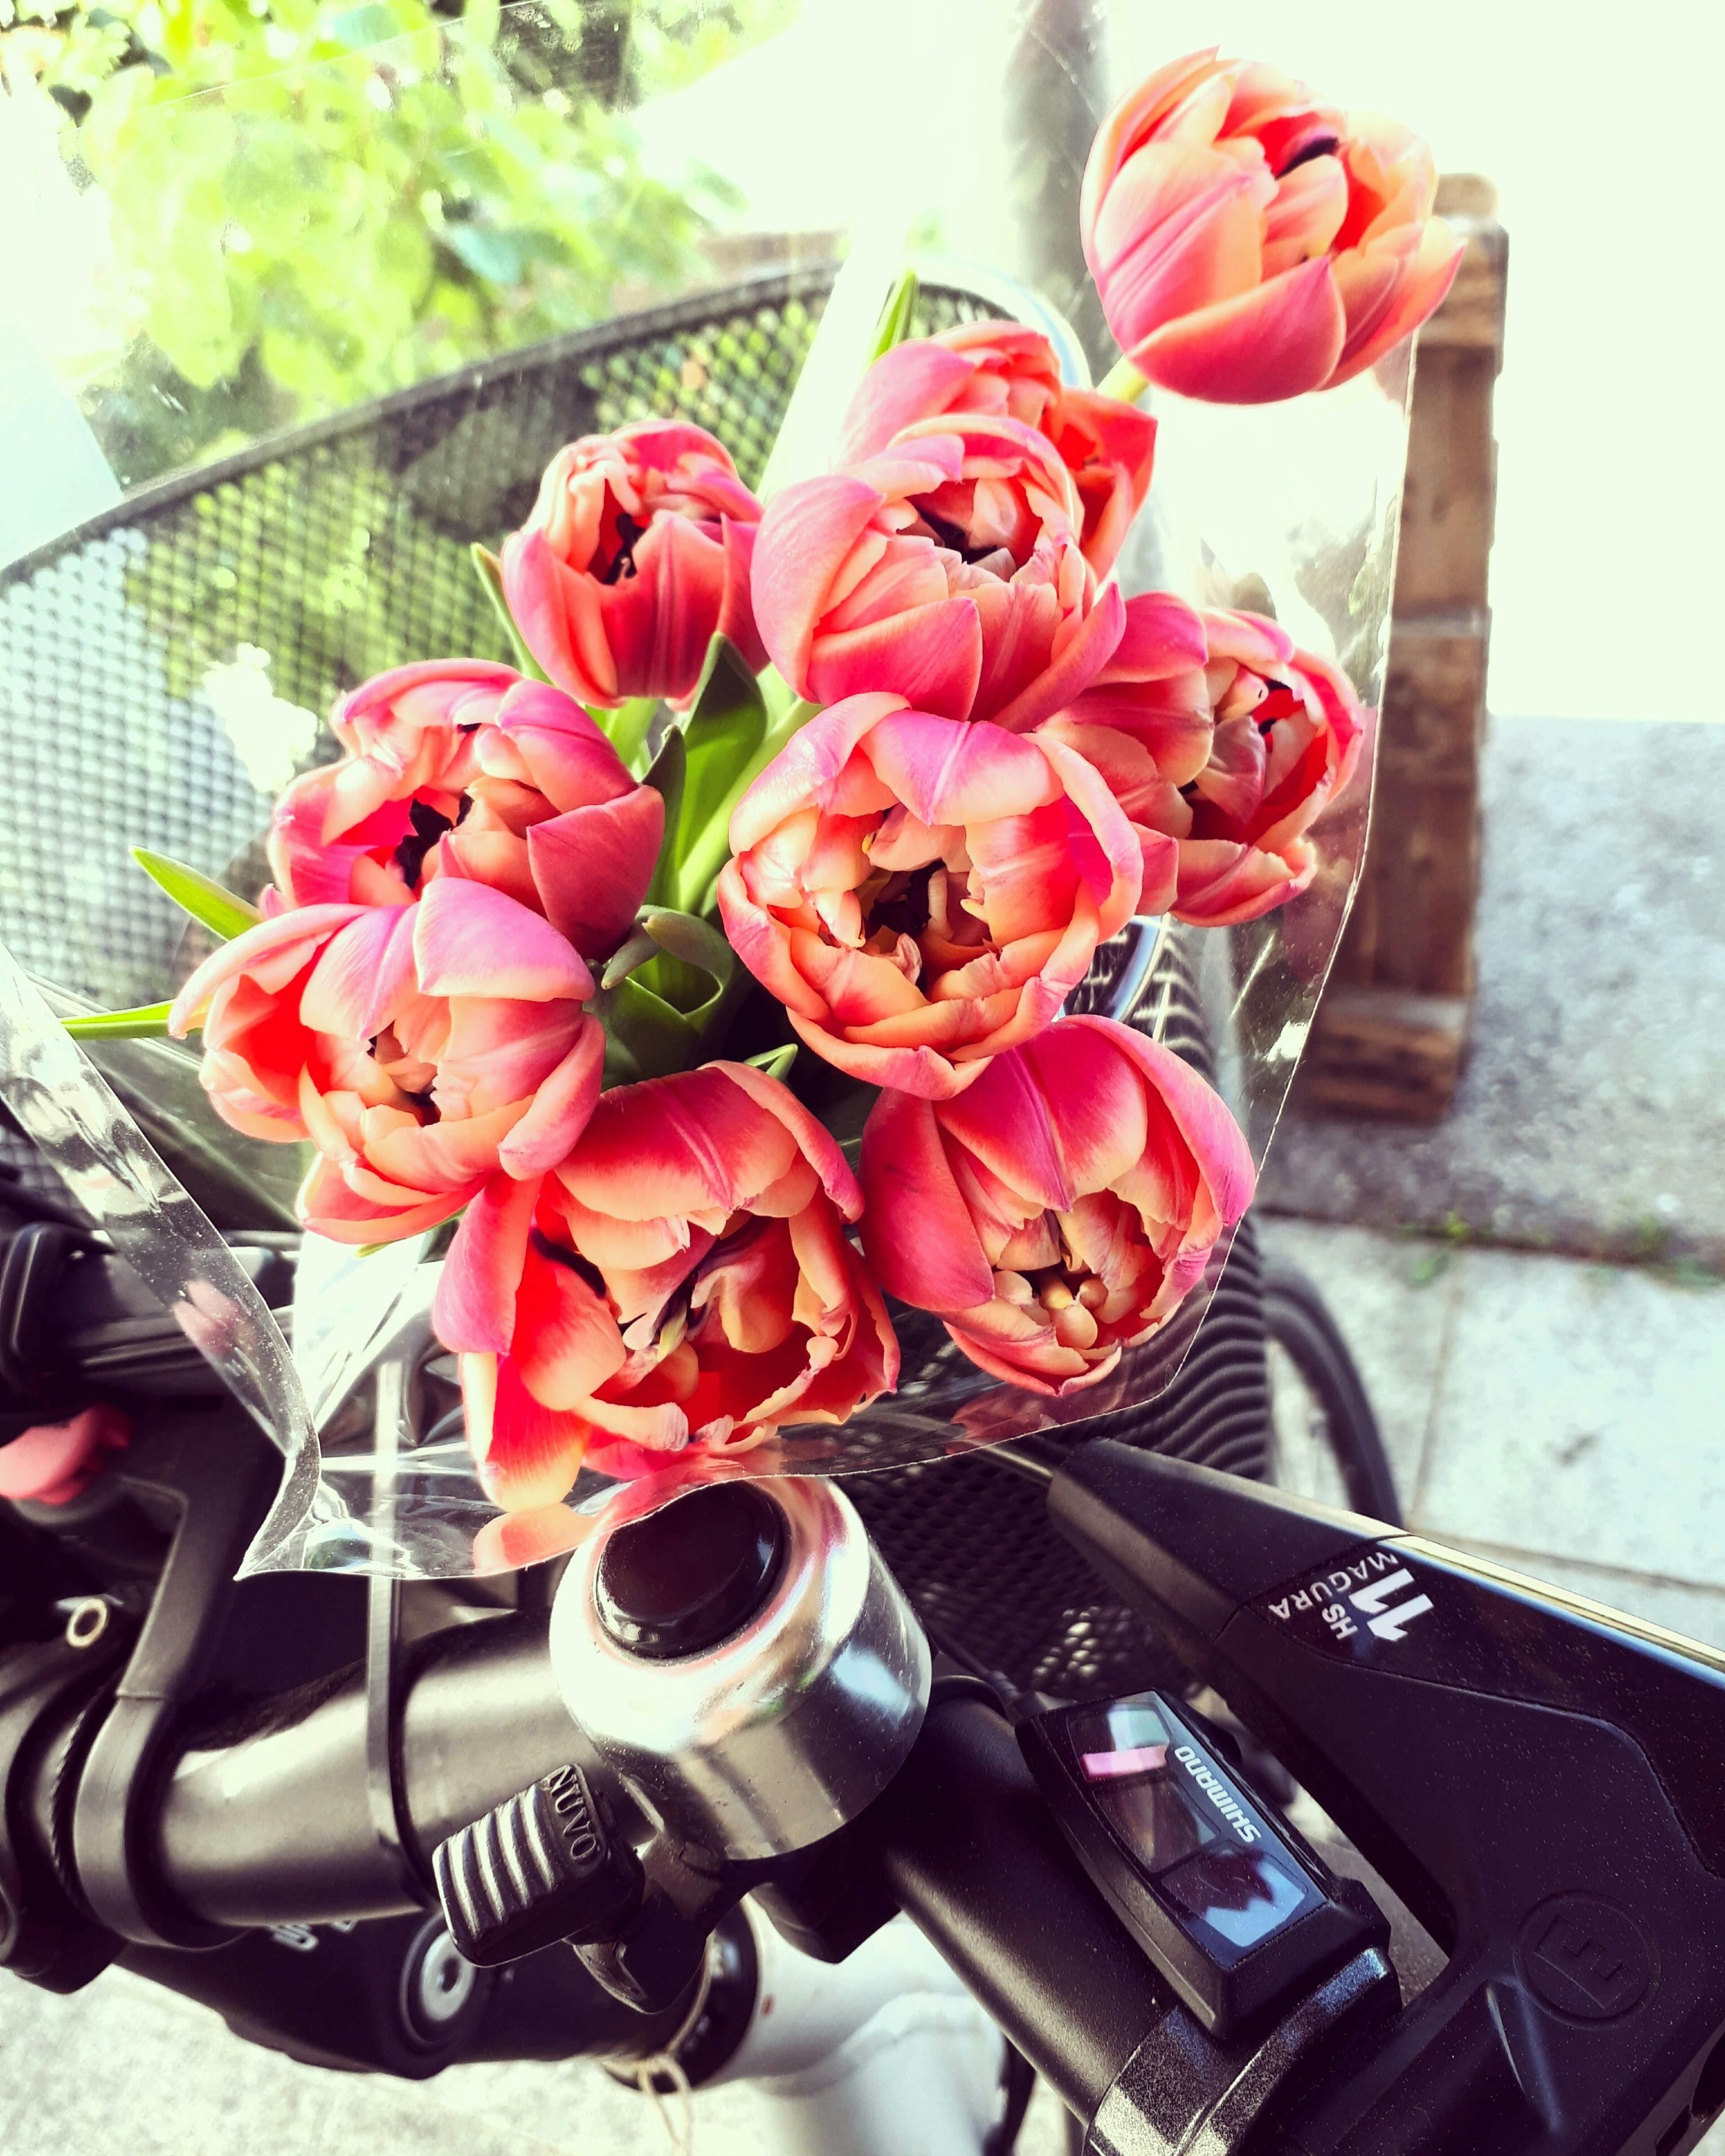 Fairtrade Blumen nachhaltig mit dem Fahrrad nach Hause gebracht